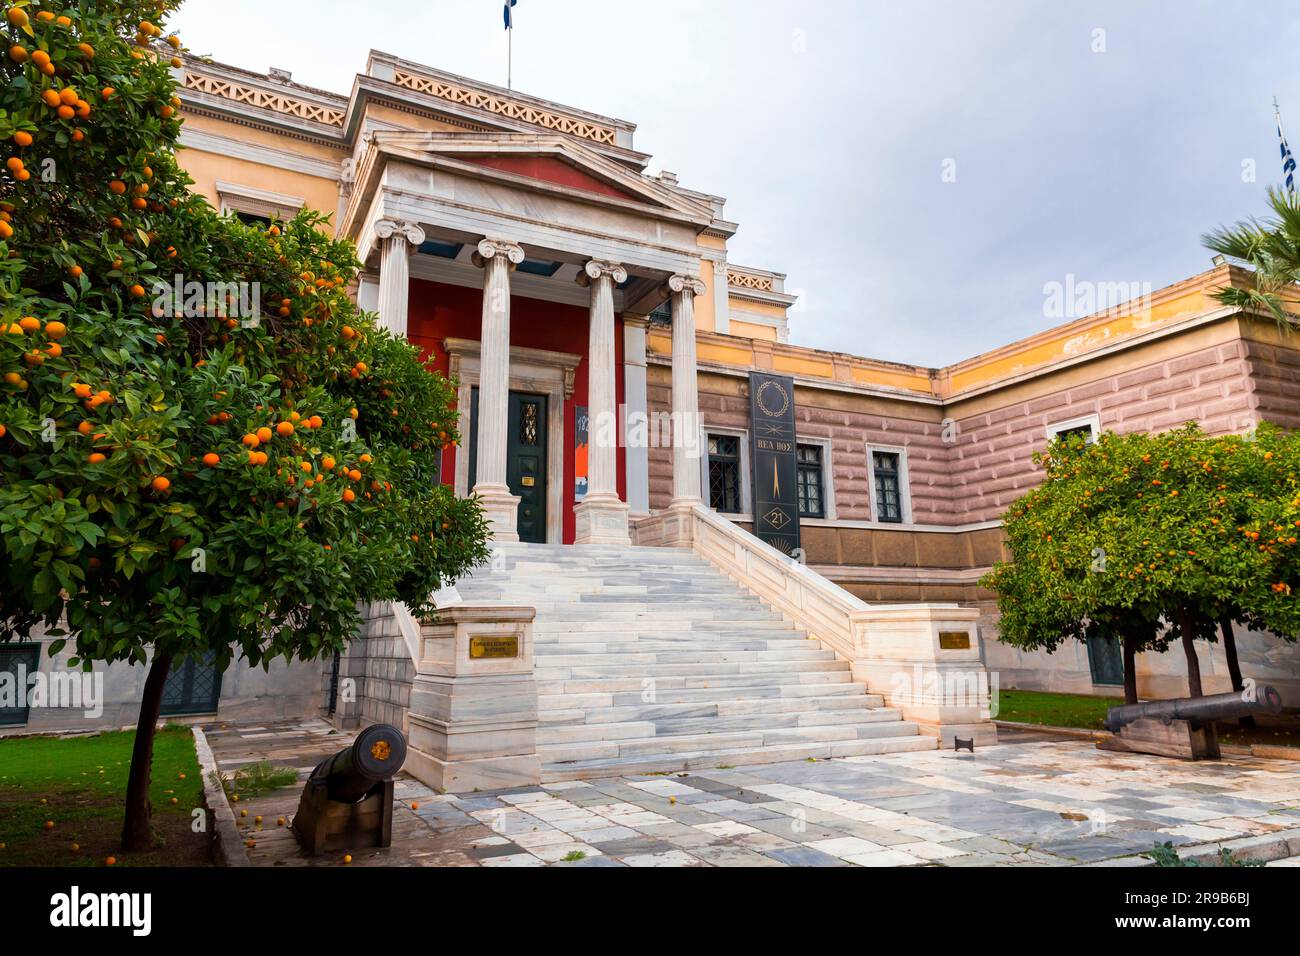 Athènes, Grèce - 27 novembre 2021 : vue extérieure du bâtiment de l'ancien Parlement, musée national d'histoire de la Grèce d'aujourd'hui, situé sur la place Kolokotronis, Banque D'Images